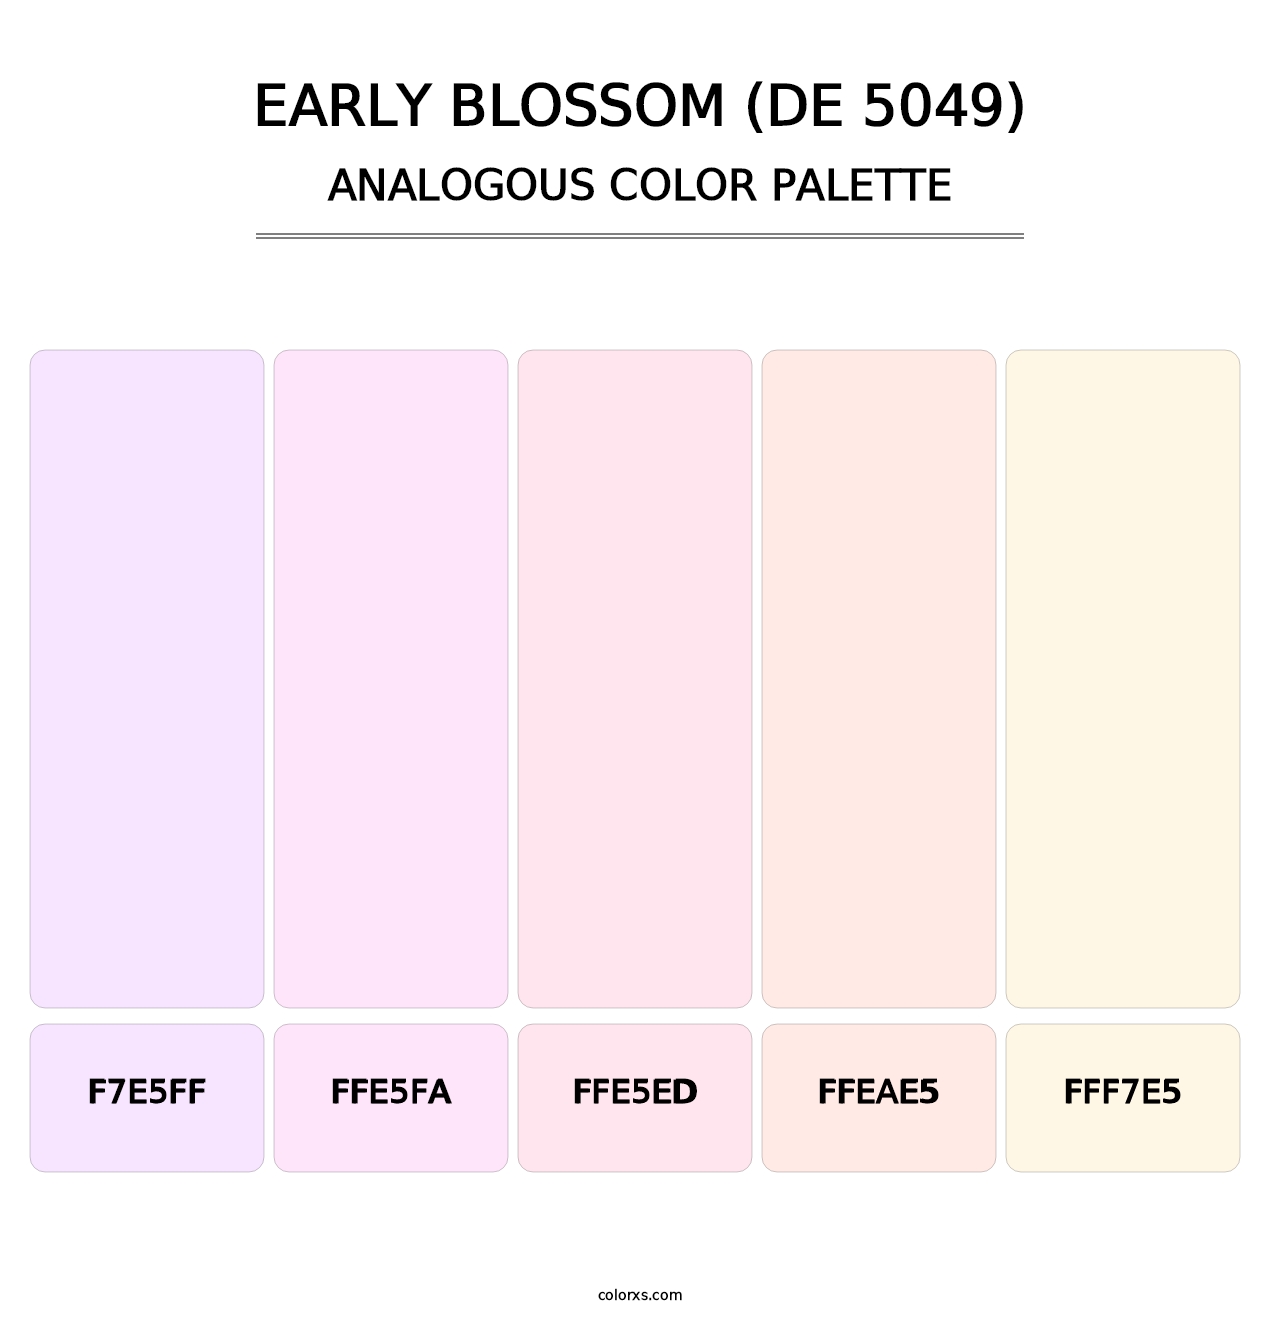 Early Blossom (DE 5049) - Analogous Color Palette